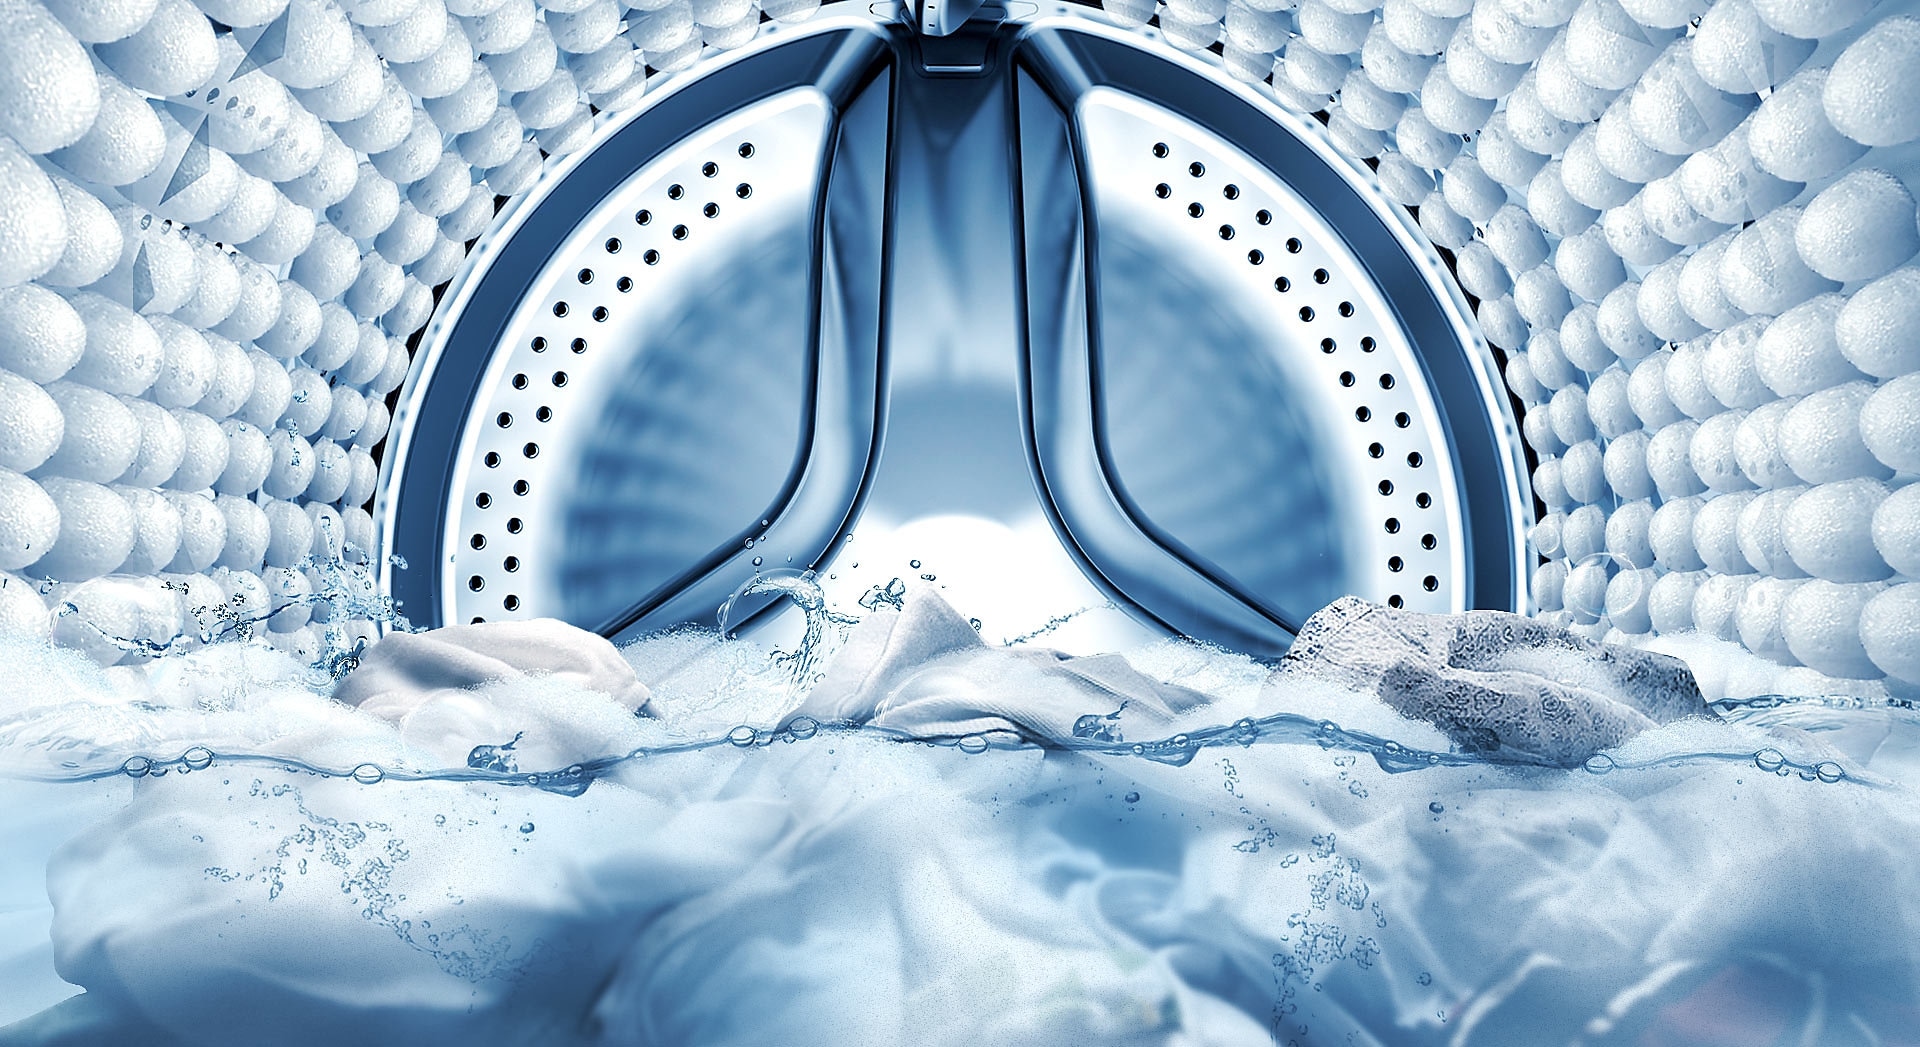 Immagine che mostra l'interno del cestello di una lavatrice, con la funzione Bubble Soak che rimuove le macchie dagli abiti.